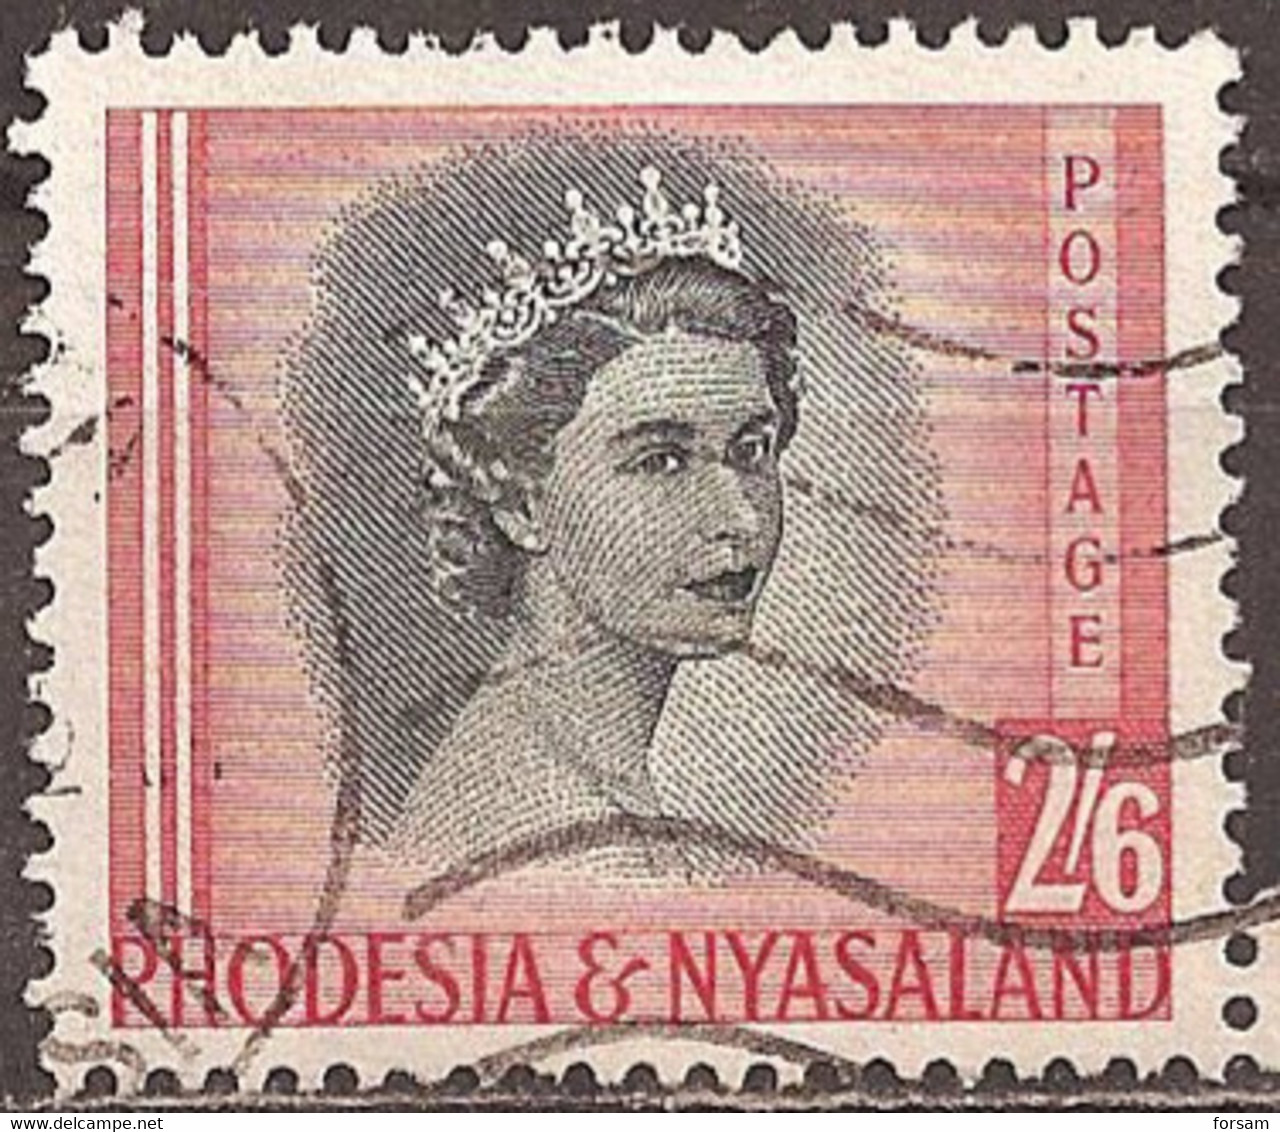 RHODESIA & NYASALAND..1954..Michel # 13...used. - Rhodésie & Nyasaland (1954-1963)